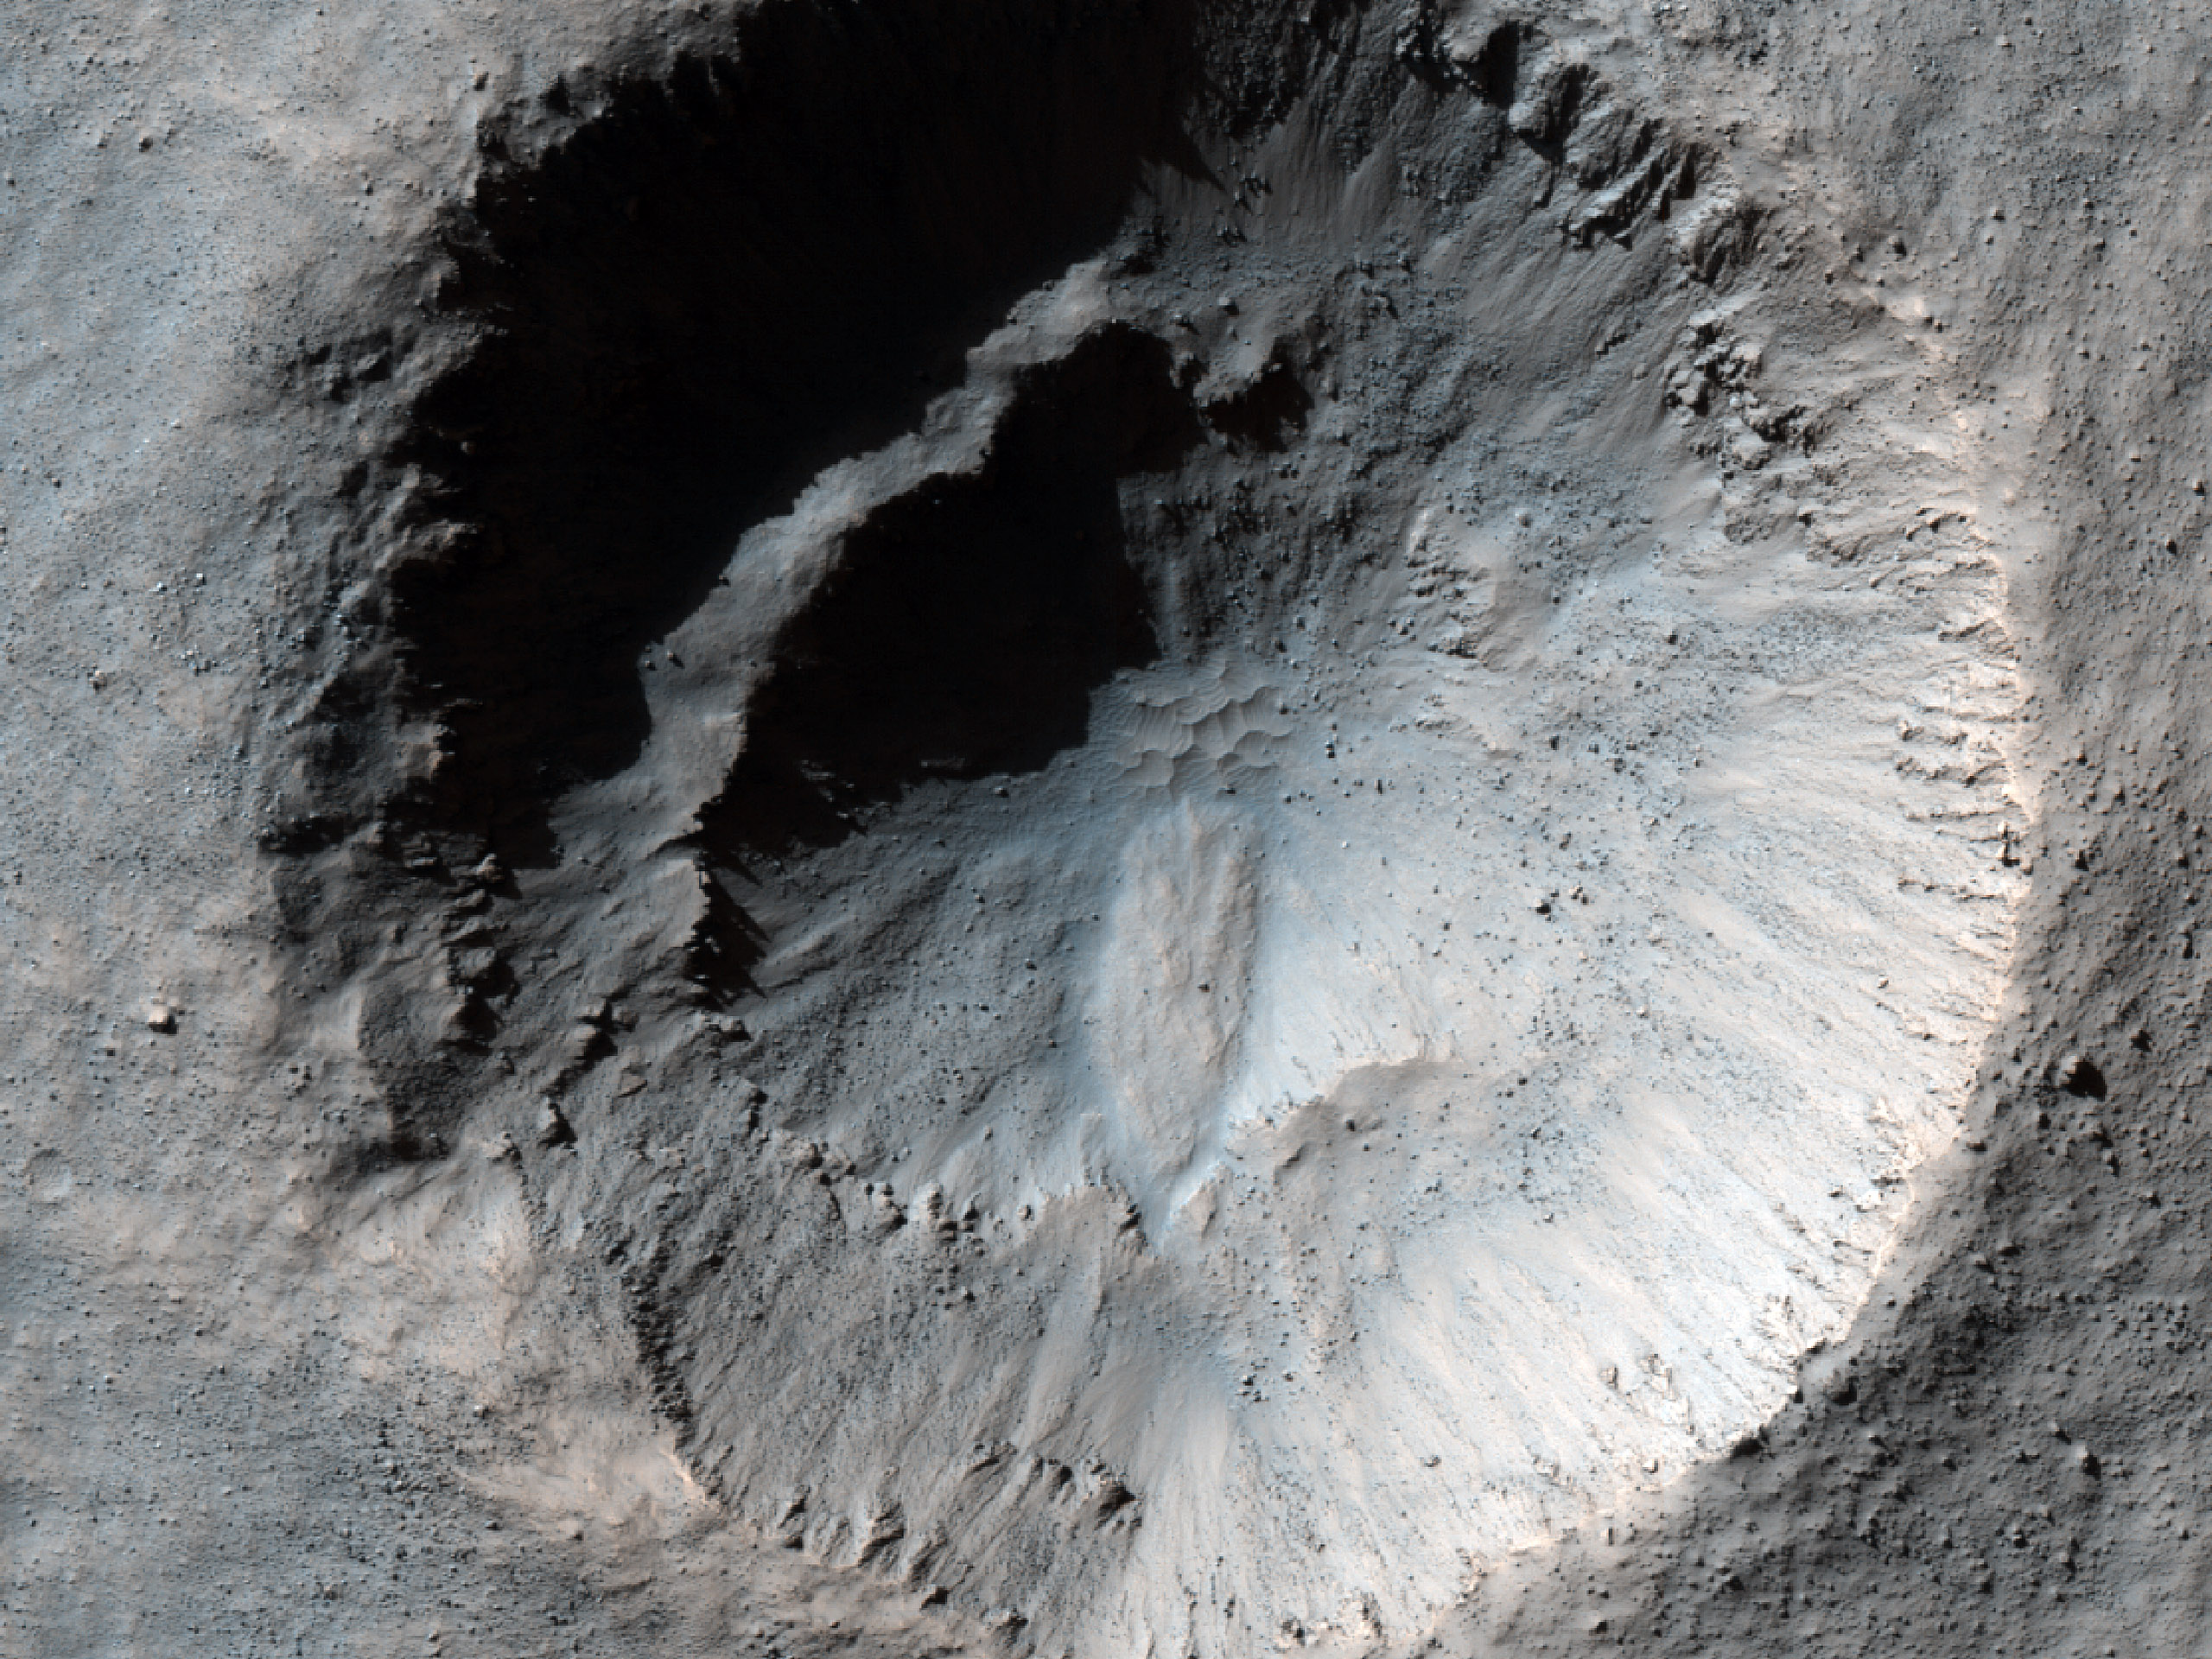 Bene servatus crater chiliometrum per medium patens